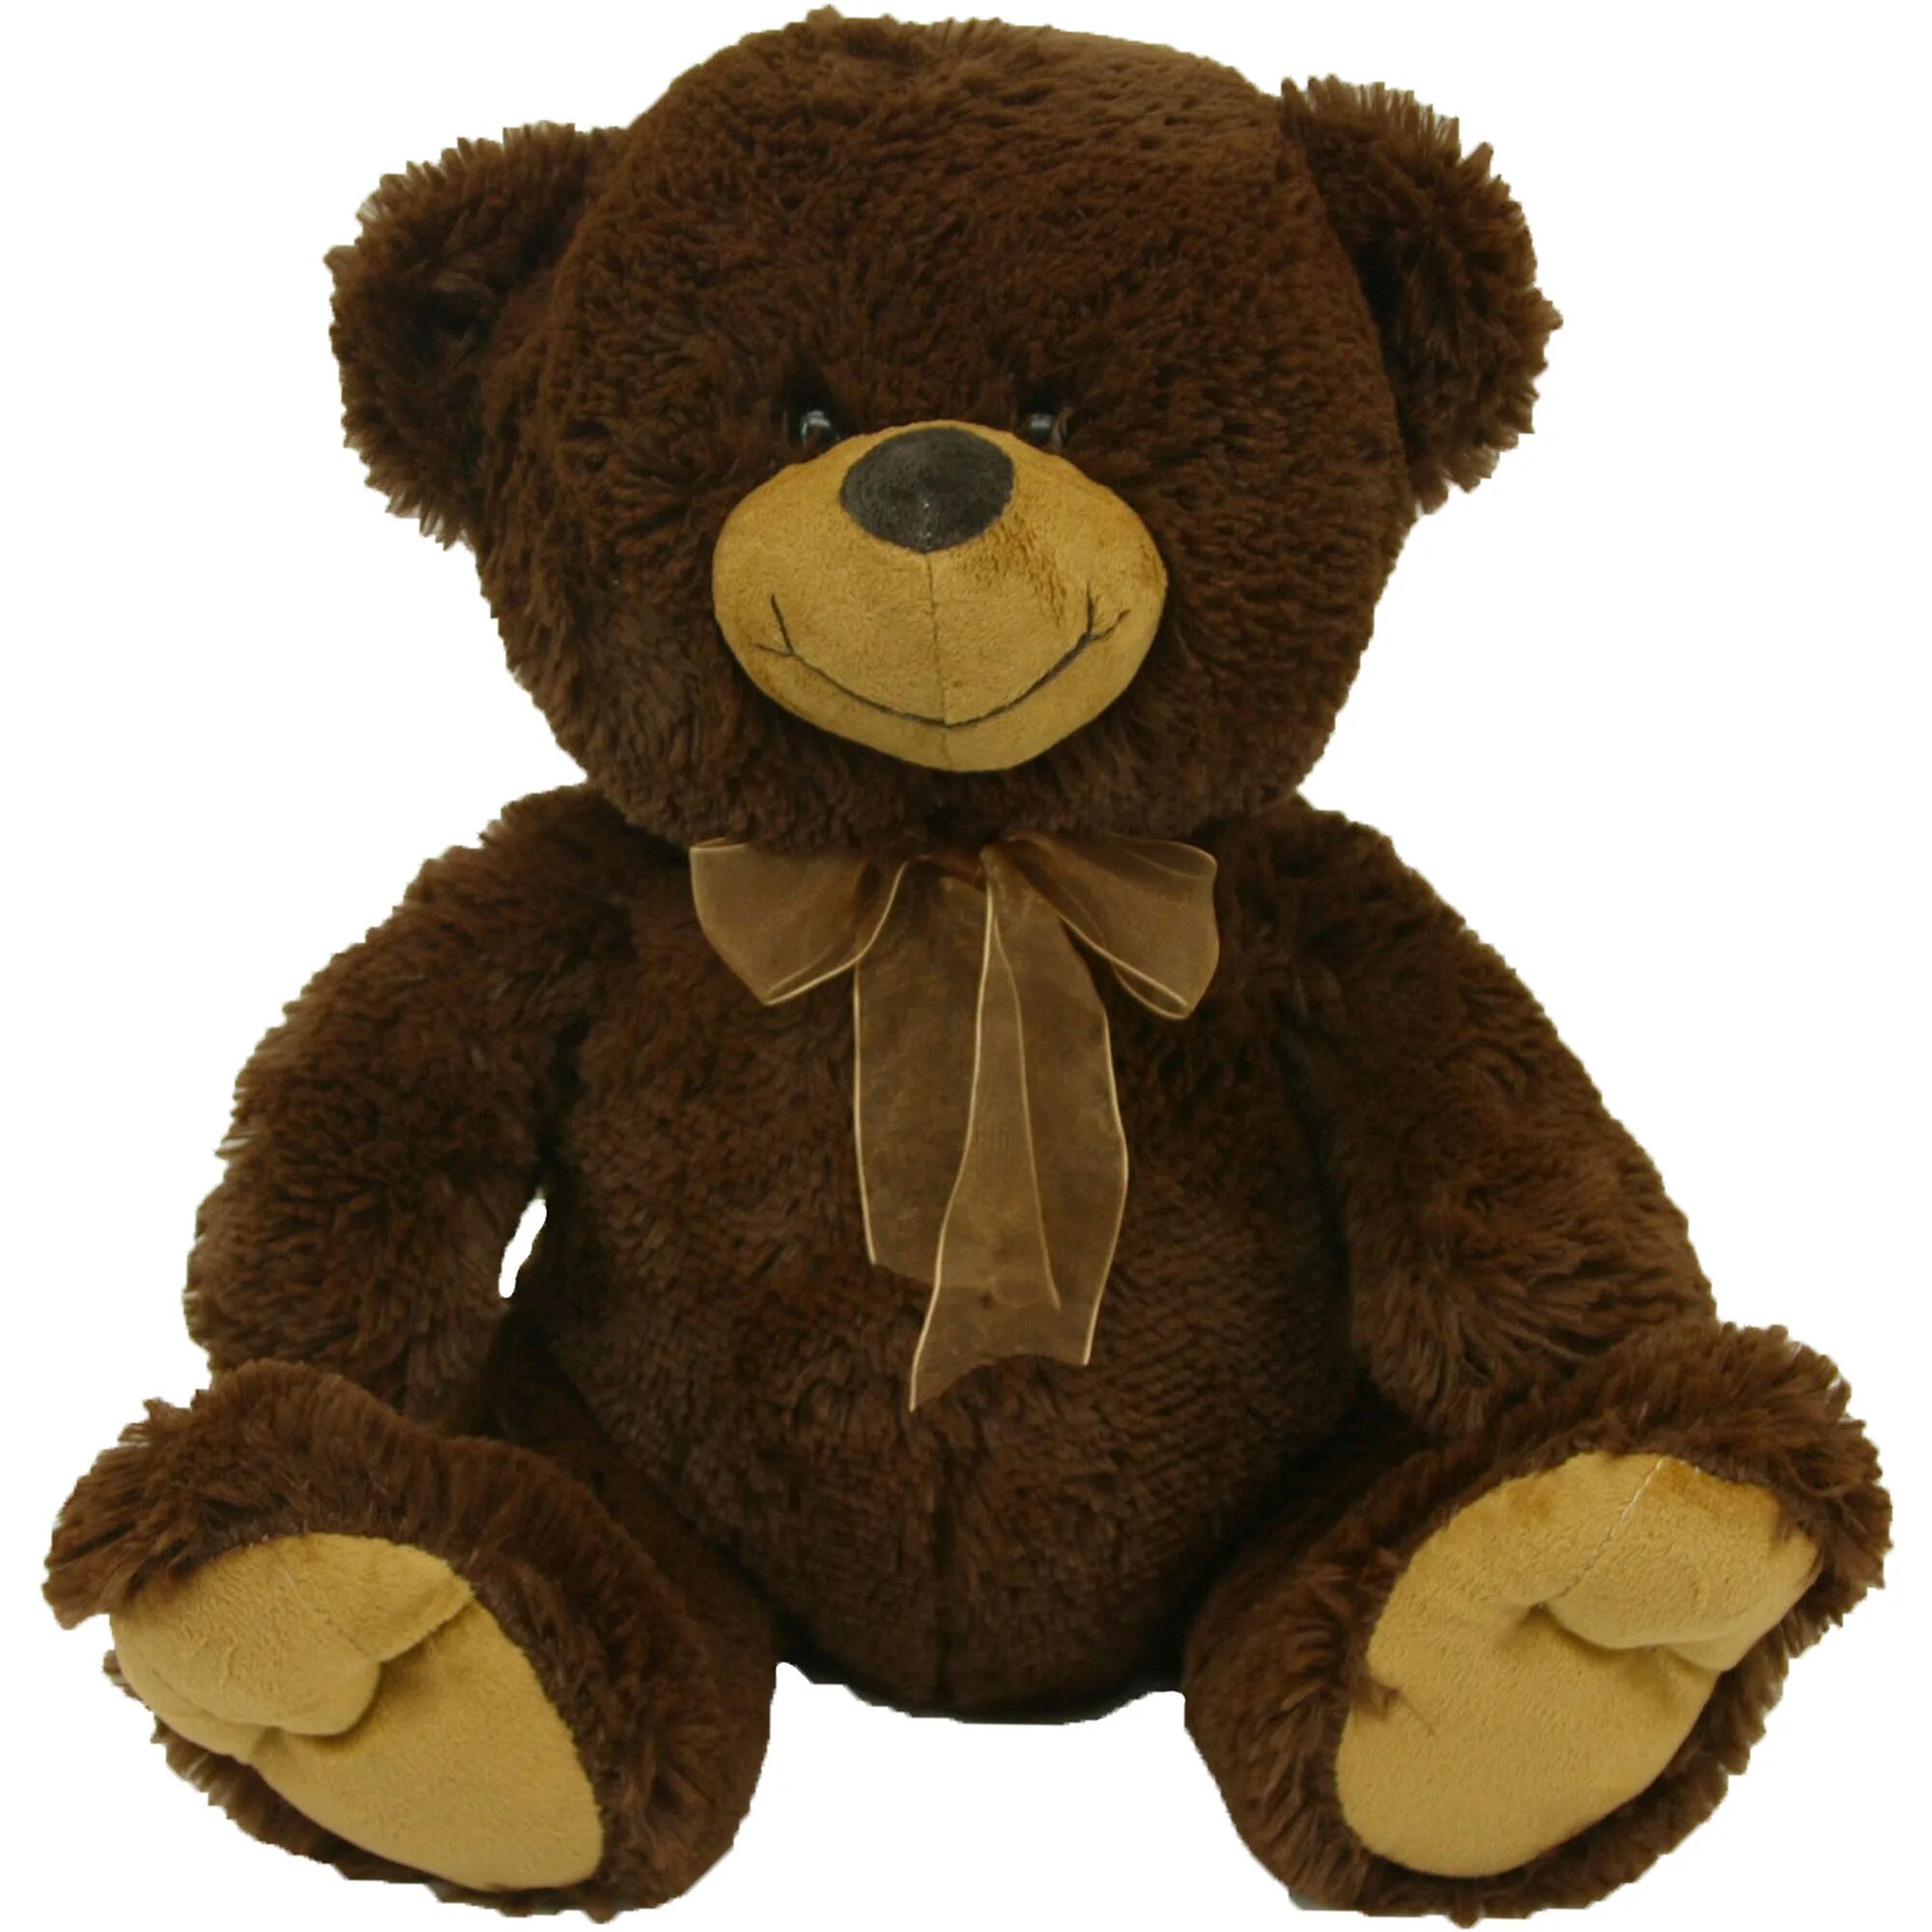 A brown teddy bear. Brown Teddy. Brown Teddy Bear. Teddy 308. Коричневая Teddy.